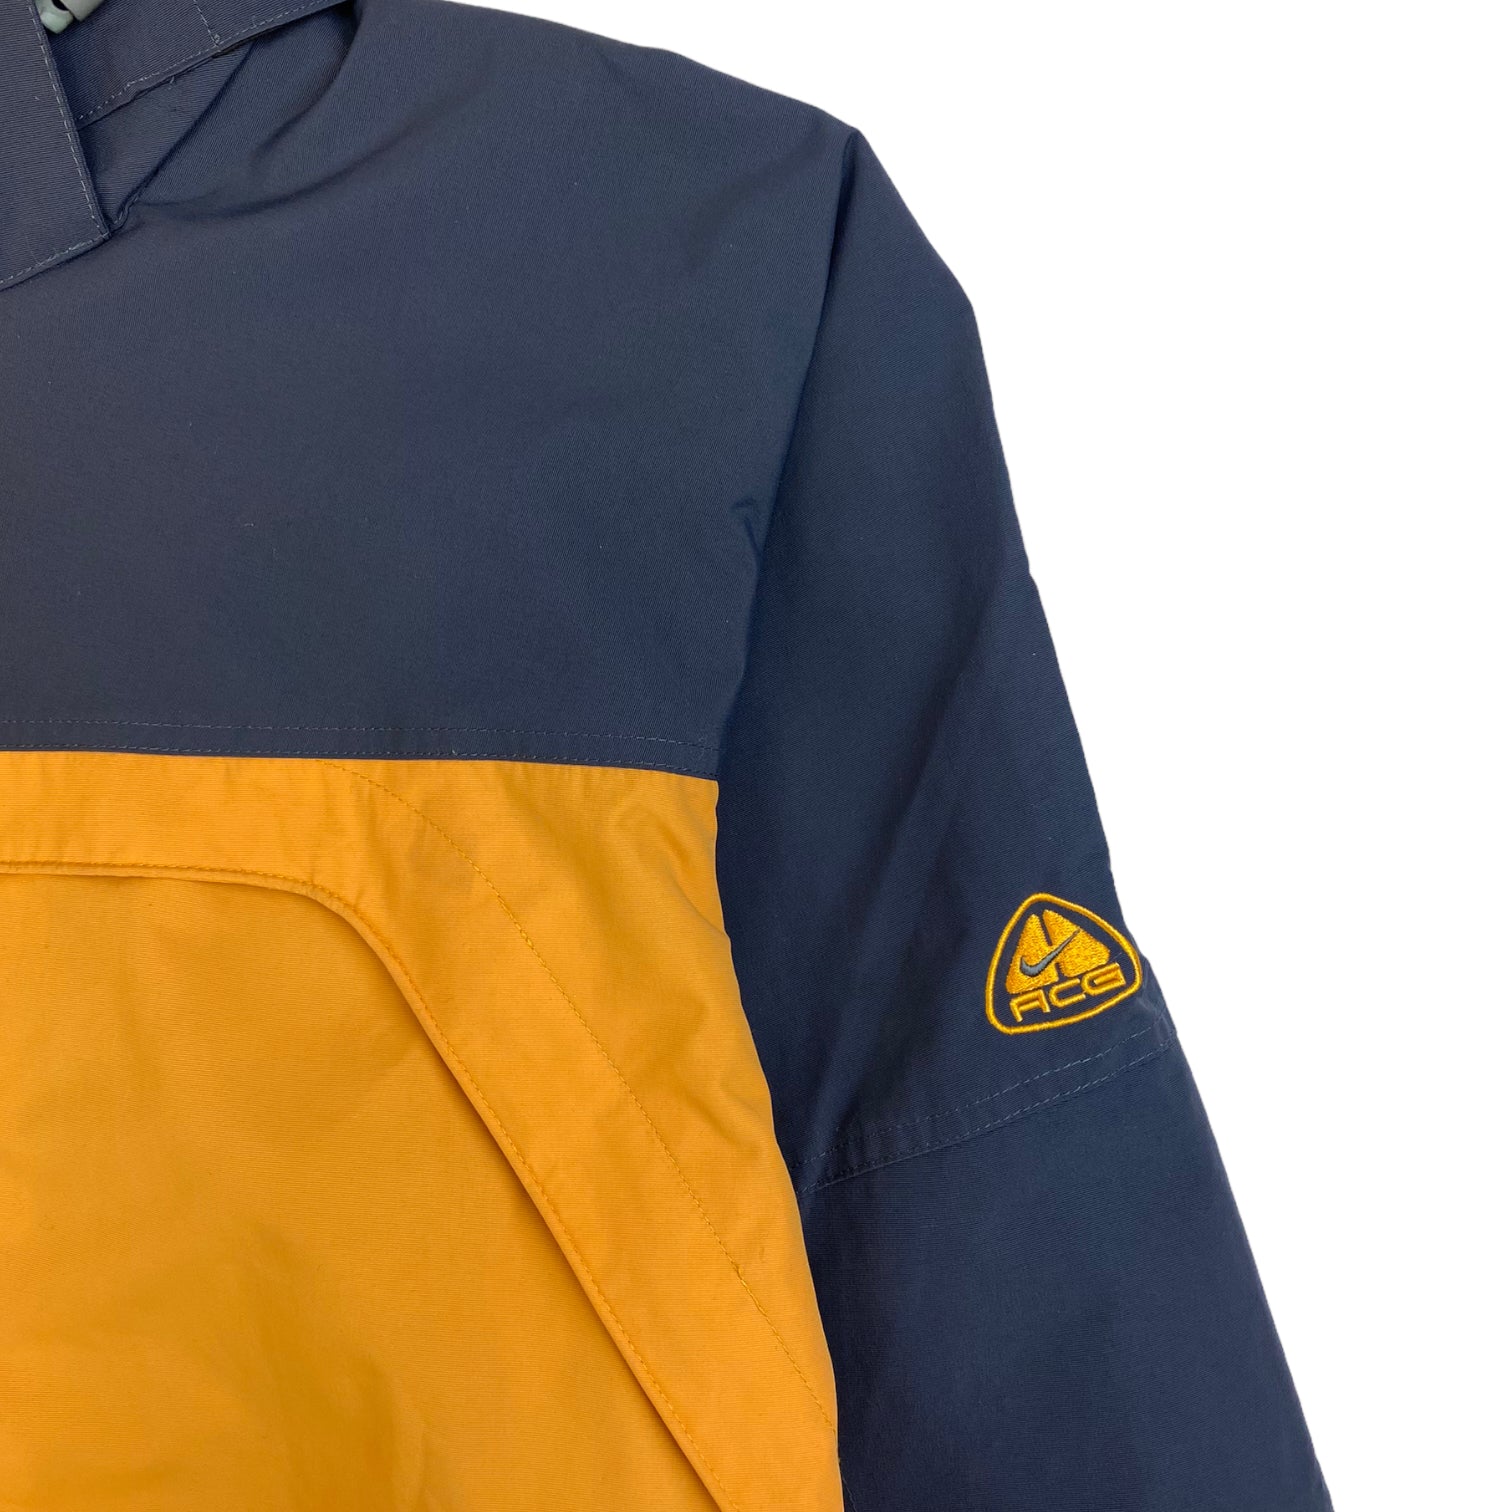 Vintage Nike ACG Ski Jacket Yellow